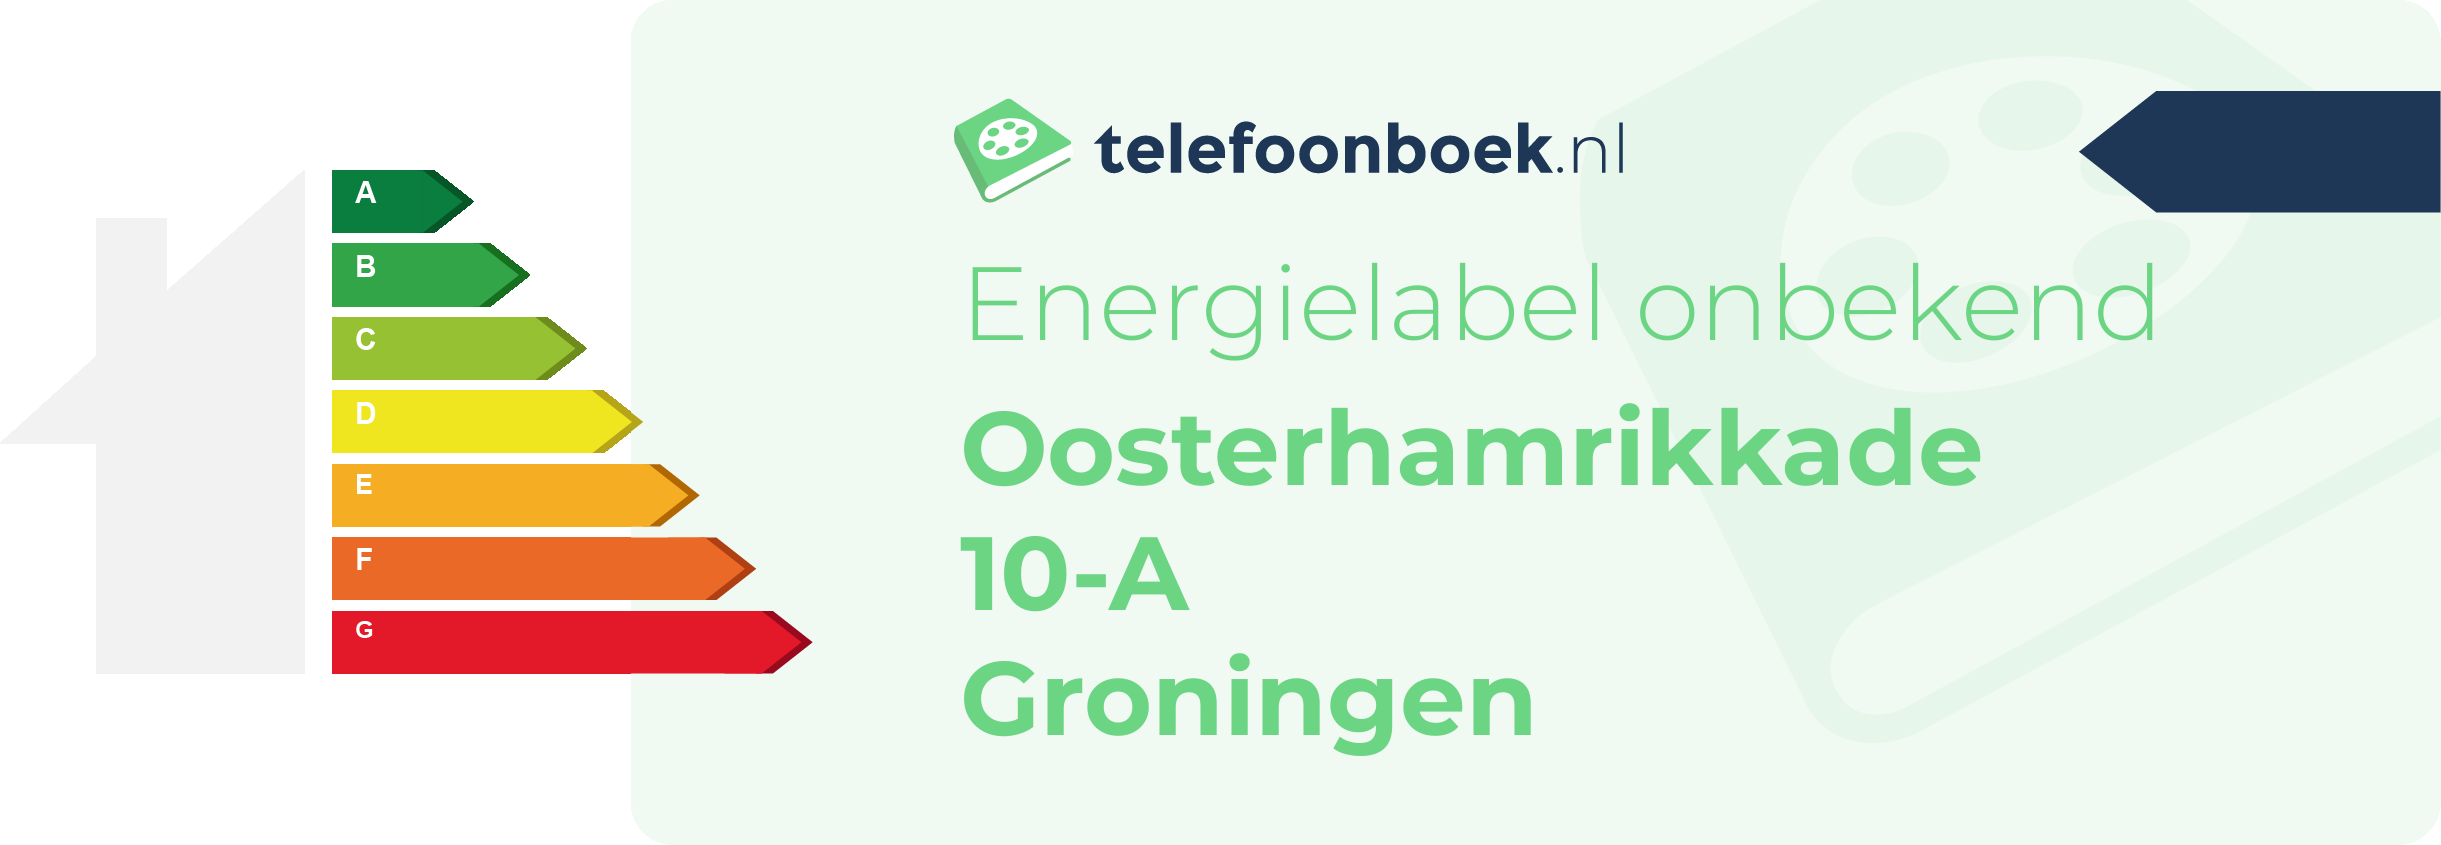 Energielabel Oosterhamrikkade 10-A Groningen